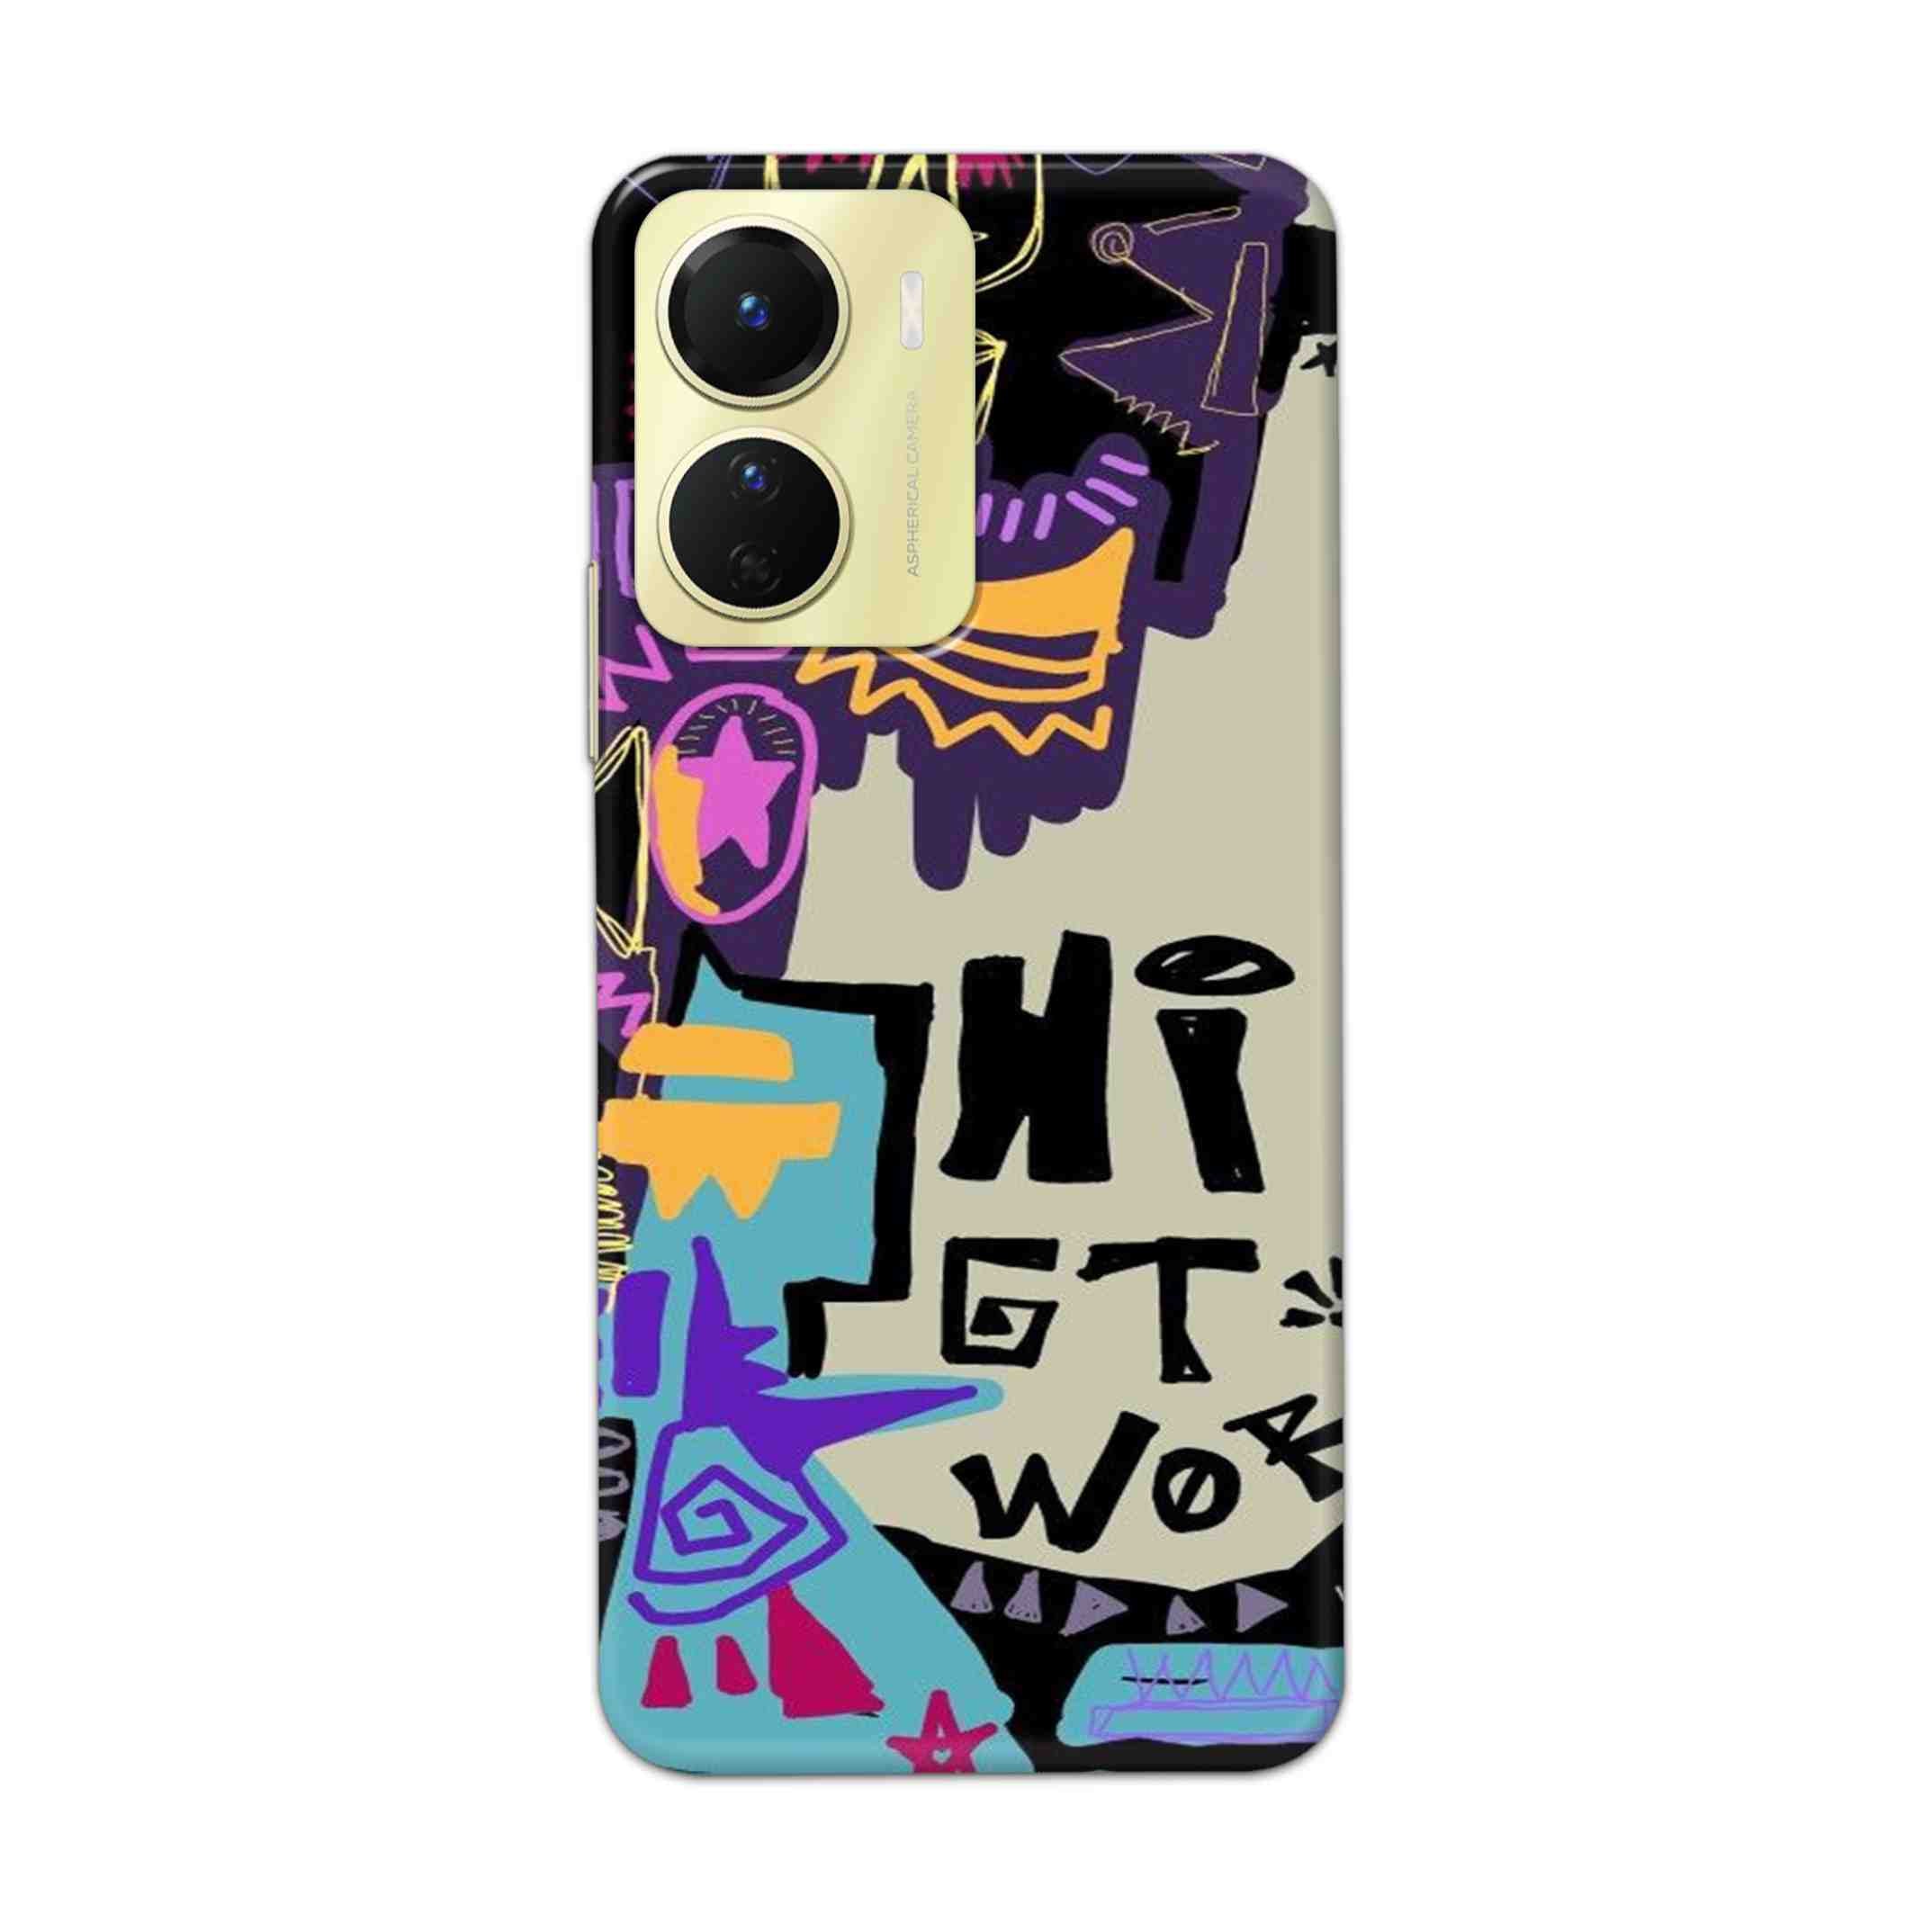 Buy Hi Gt World Hard Back Mobile Phone Case Cover For Vivo Y16 Online